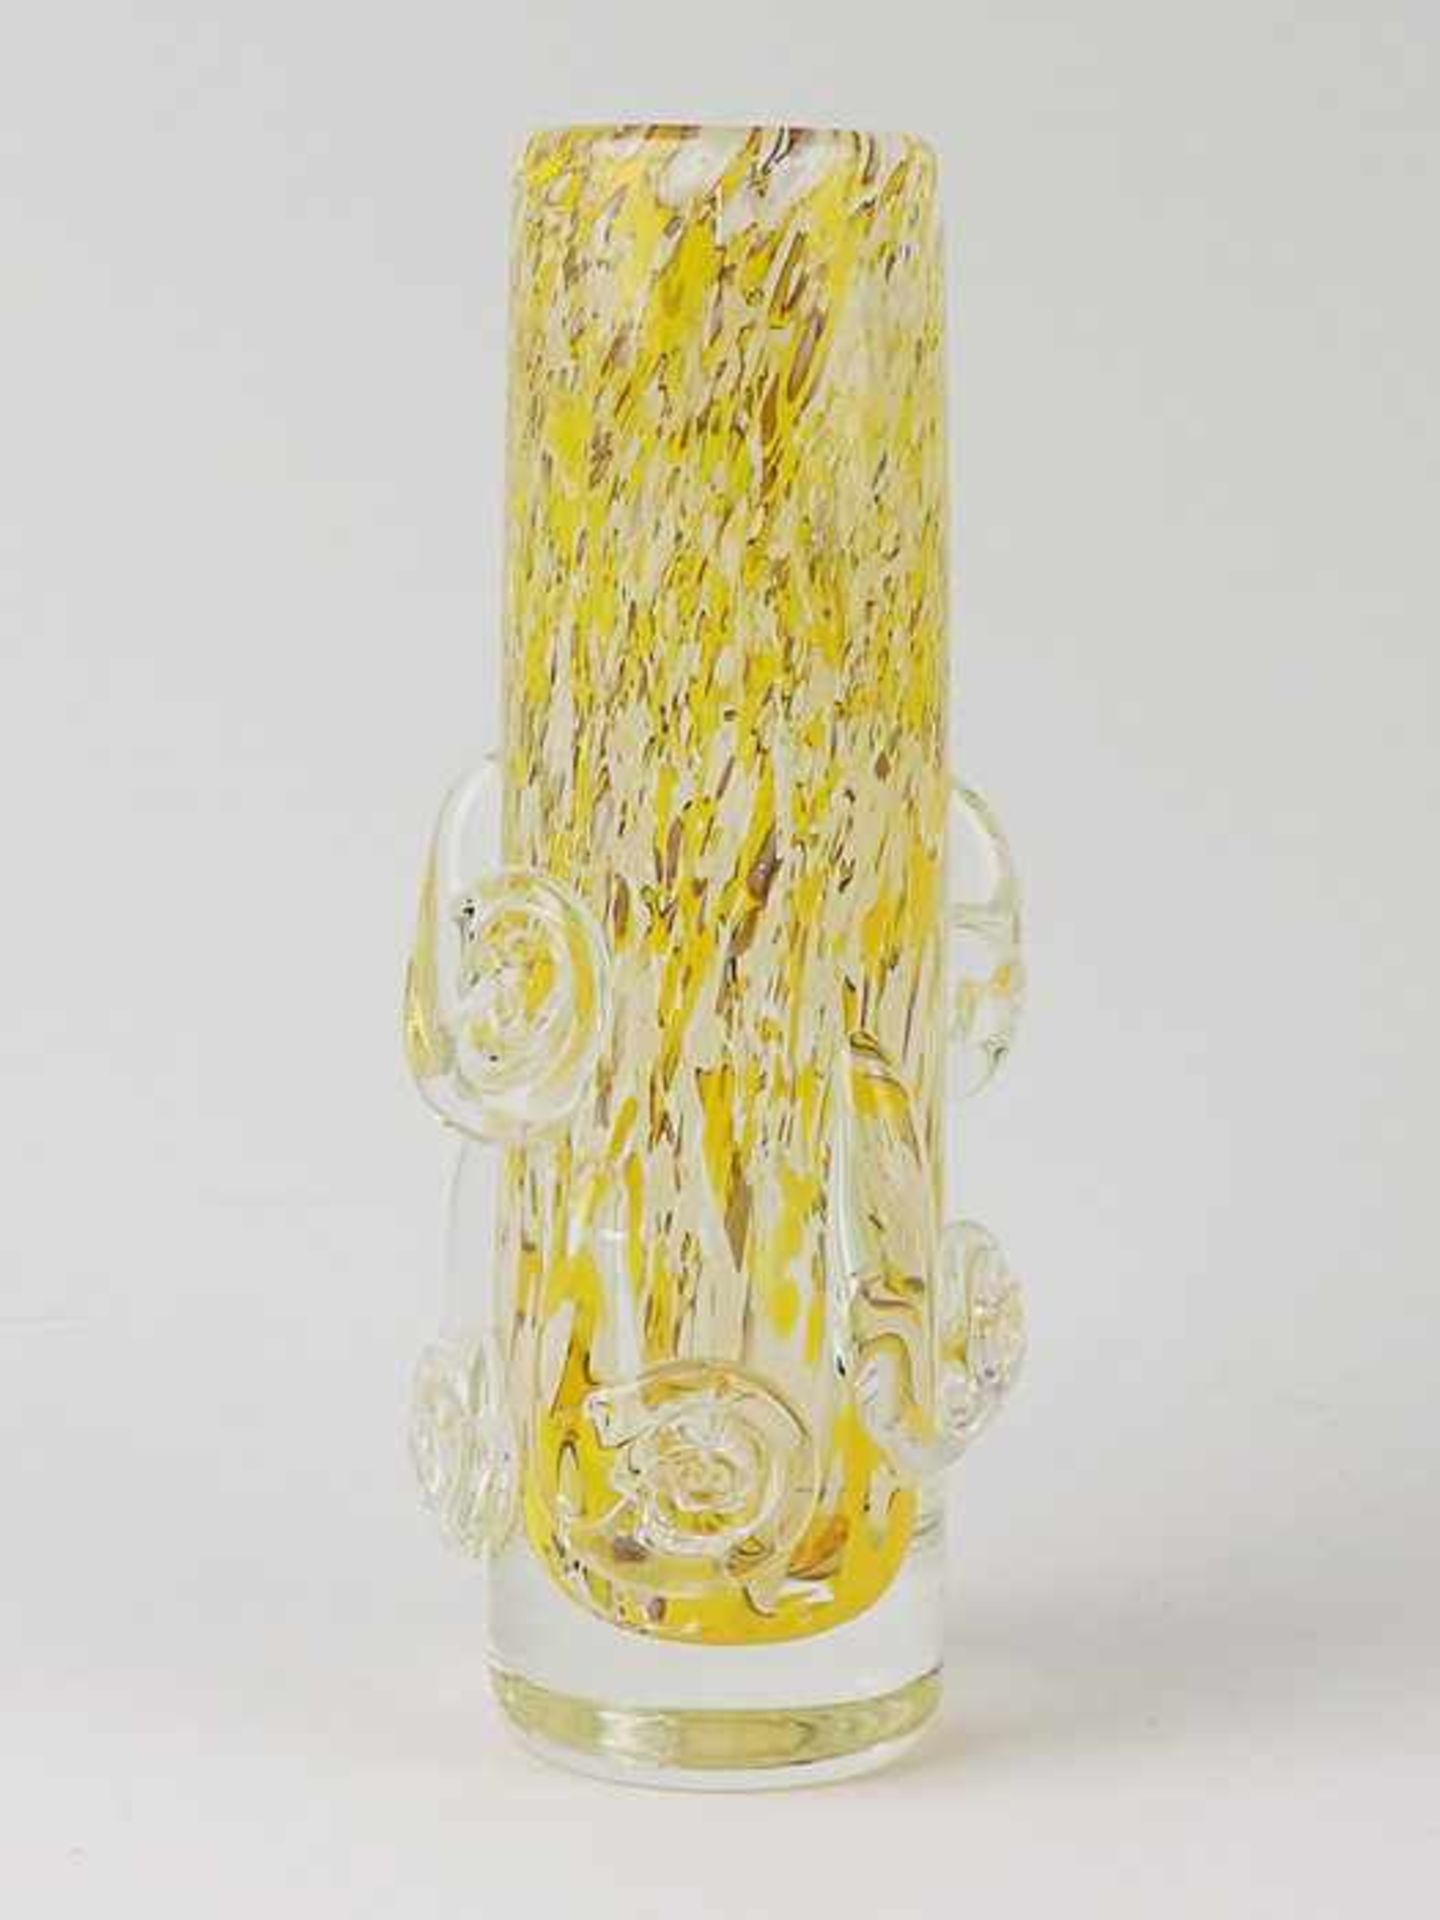 Vasefarbloses dickw. Glas, runder Stand, hoher zylindrischer Korpus, abgerundeter Mündungsrand, in - Bild 2 aus 2